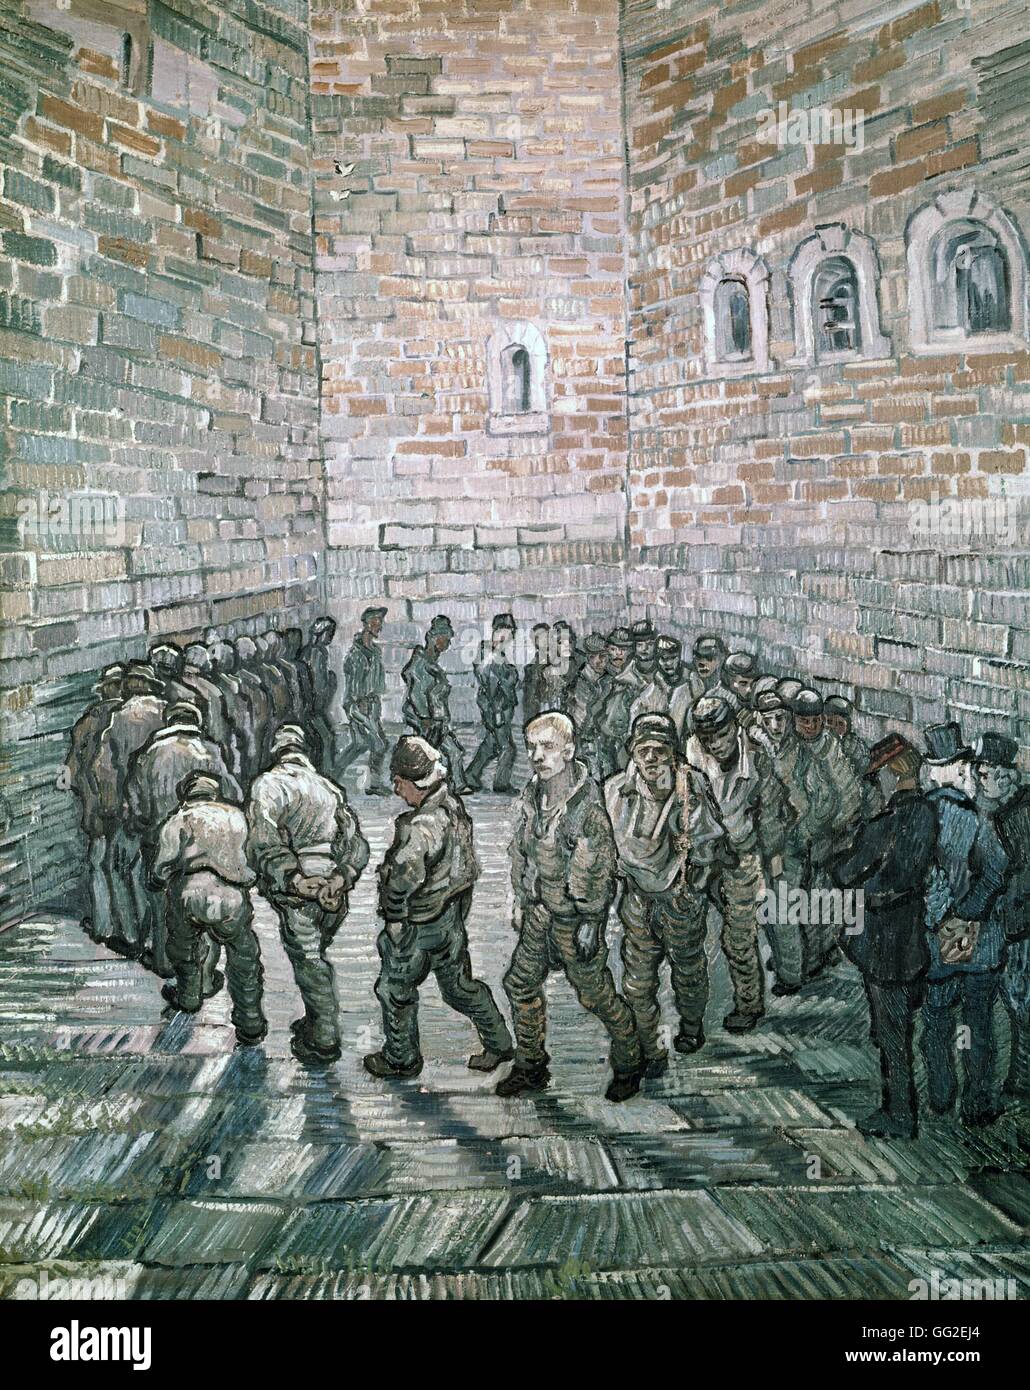 Vincent van Gogh l'école Néerlandaise ronde des prisonniers ou détenus de l'exercice 1890 Huile sur toile (80 x 64 cm) de Moscou, le Musée des beaux-arts Pouchkine Banque D'Images